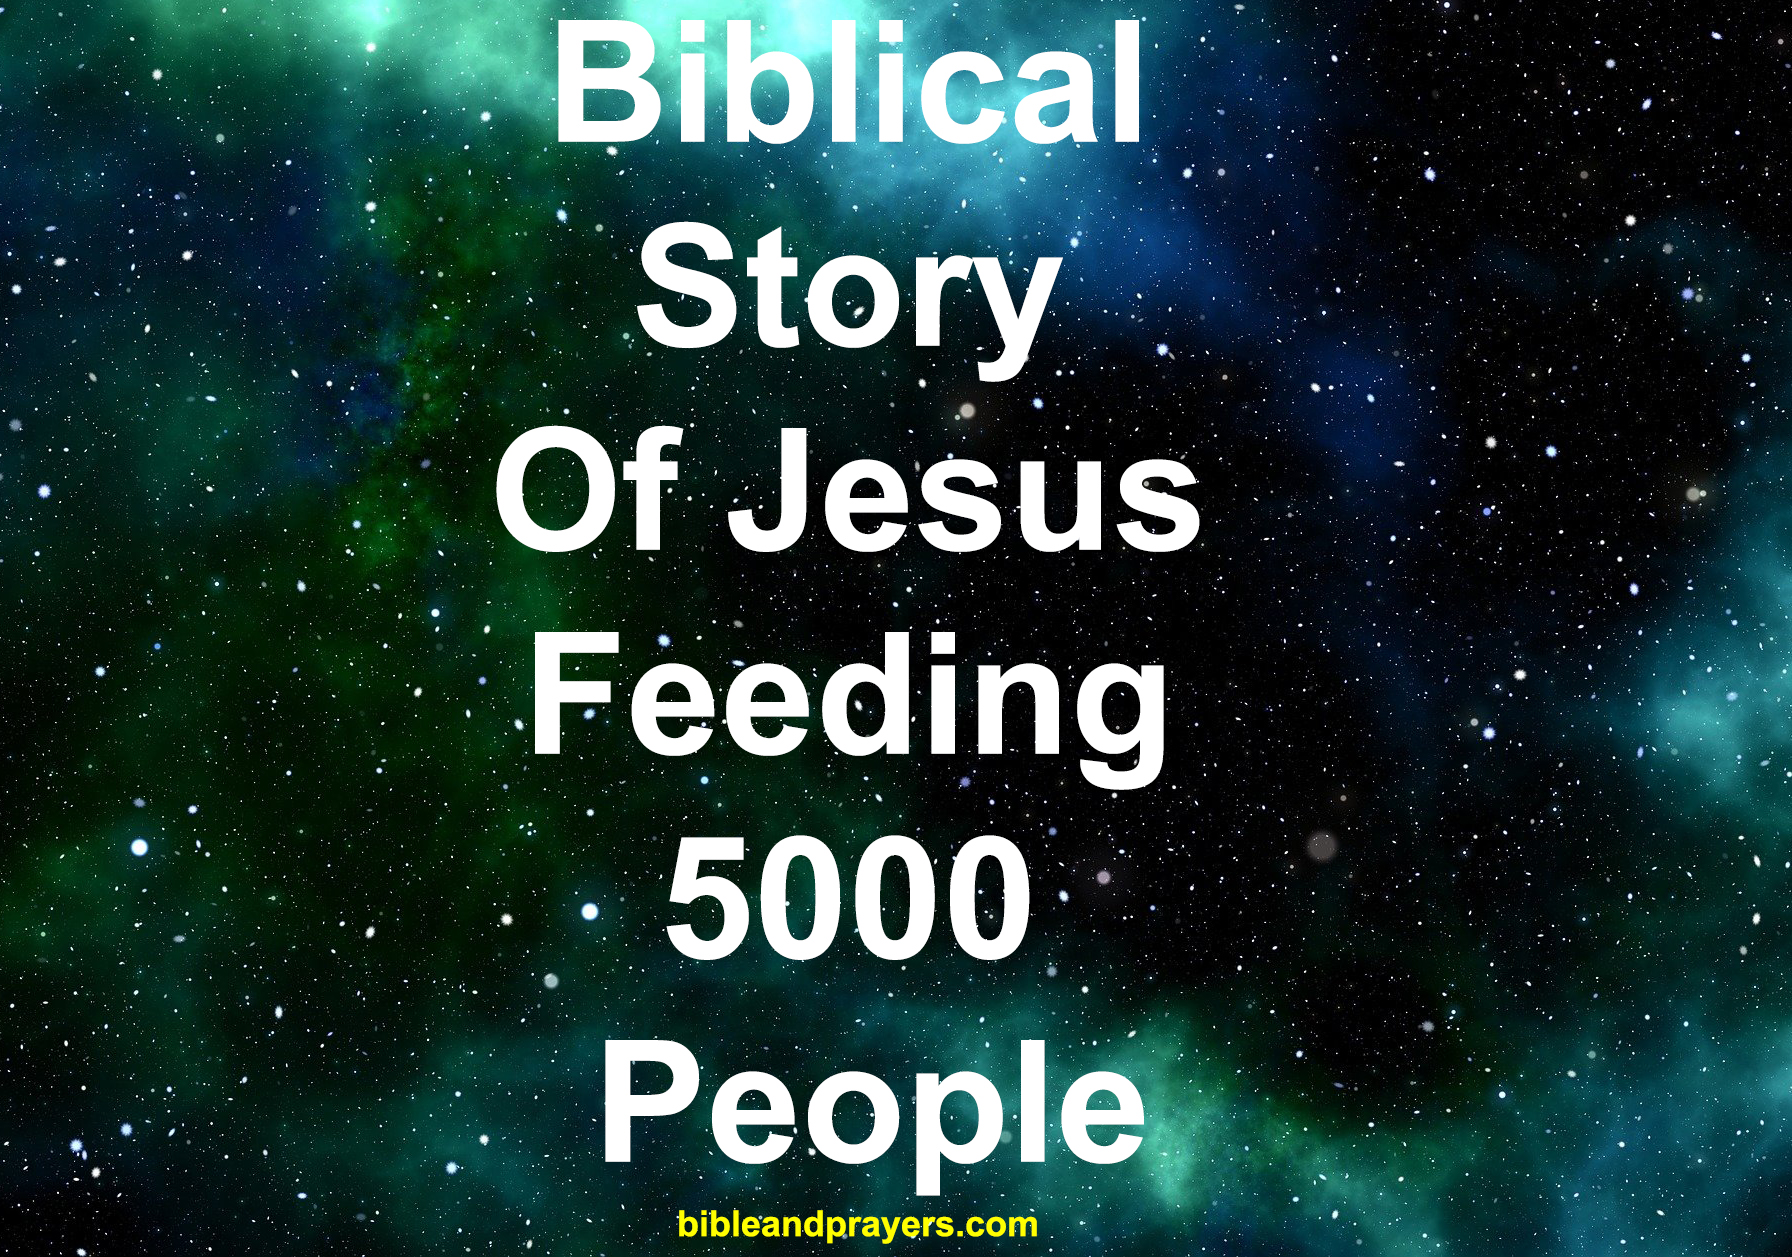 Biblical Story Of Jesus Feeding 5000 People